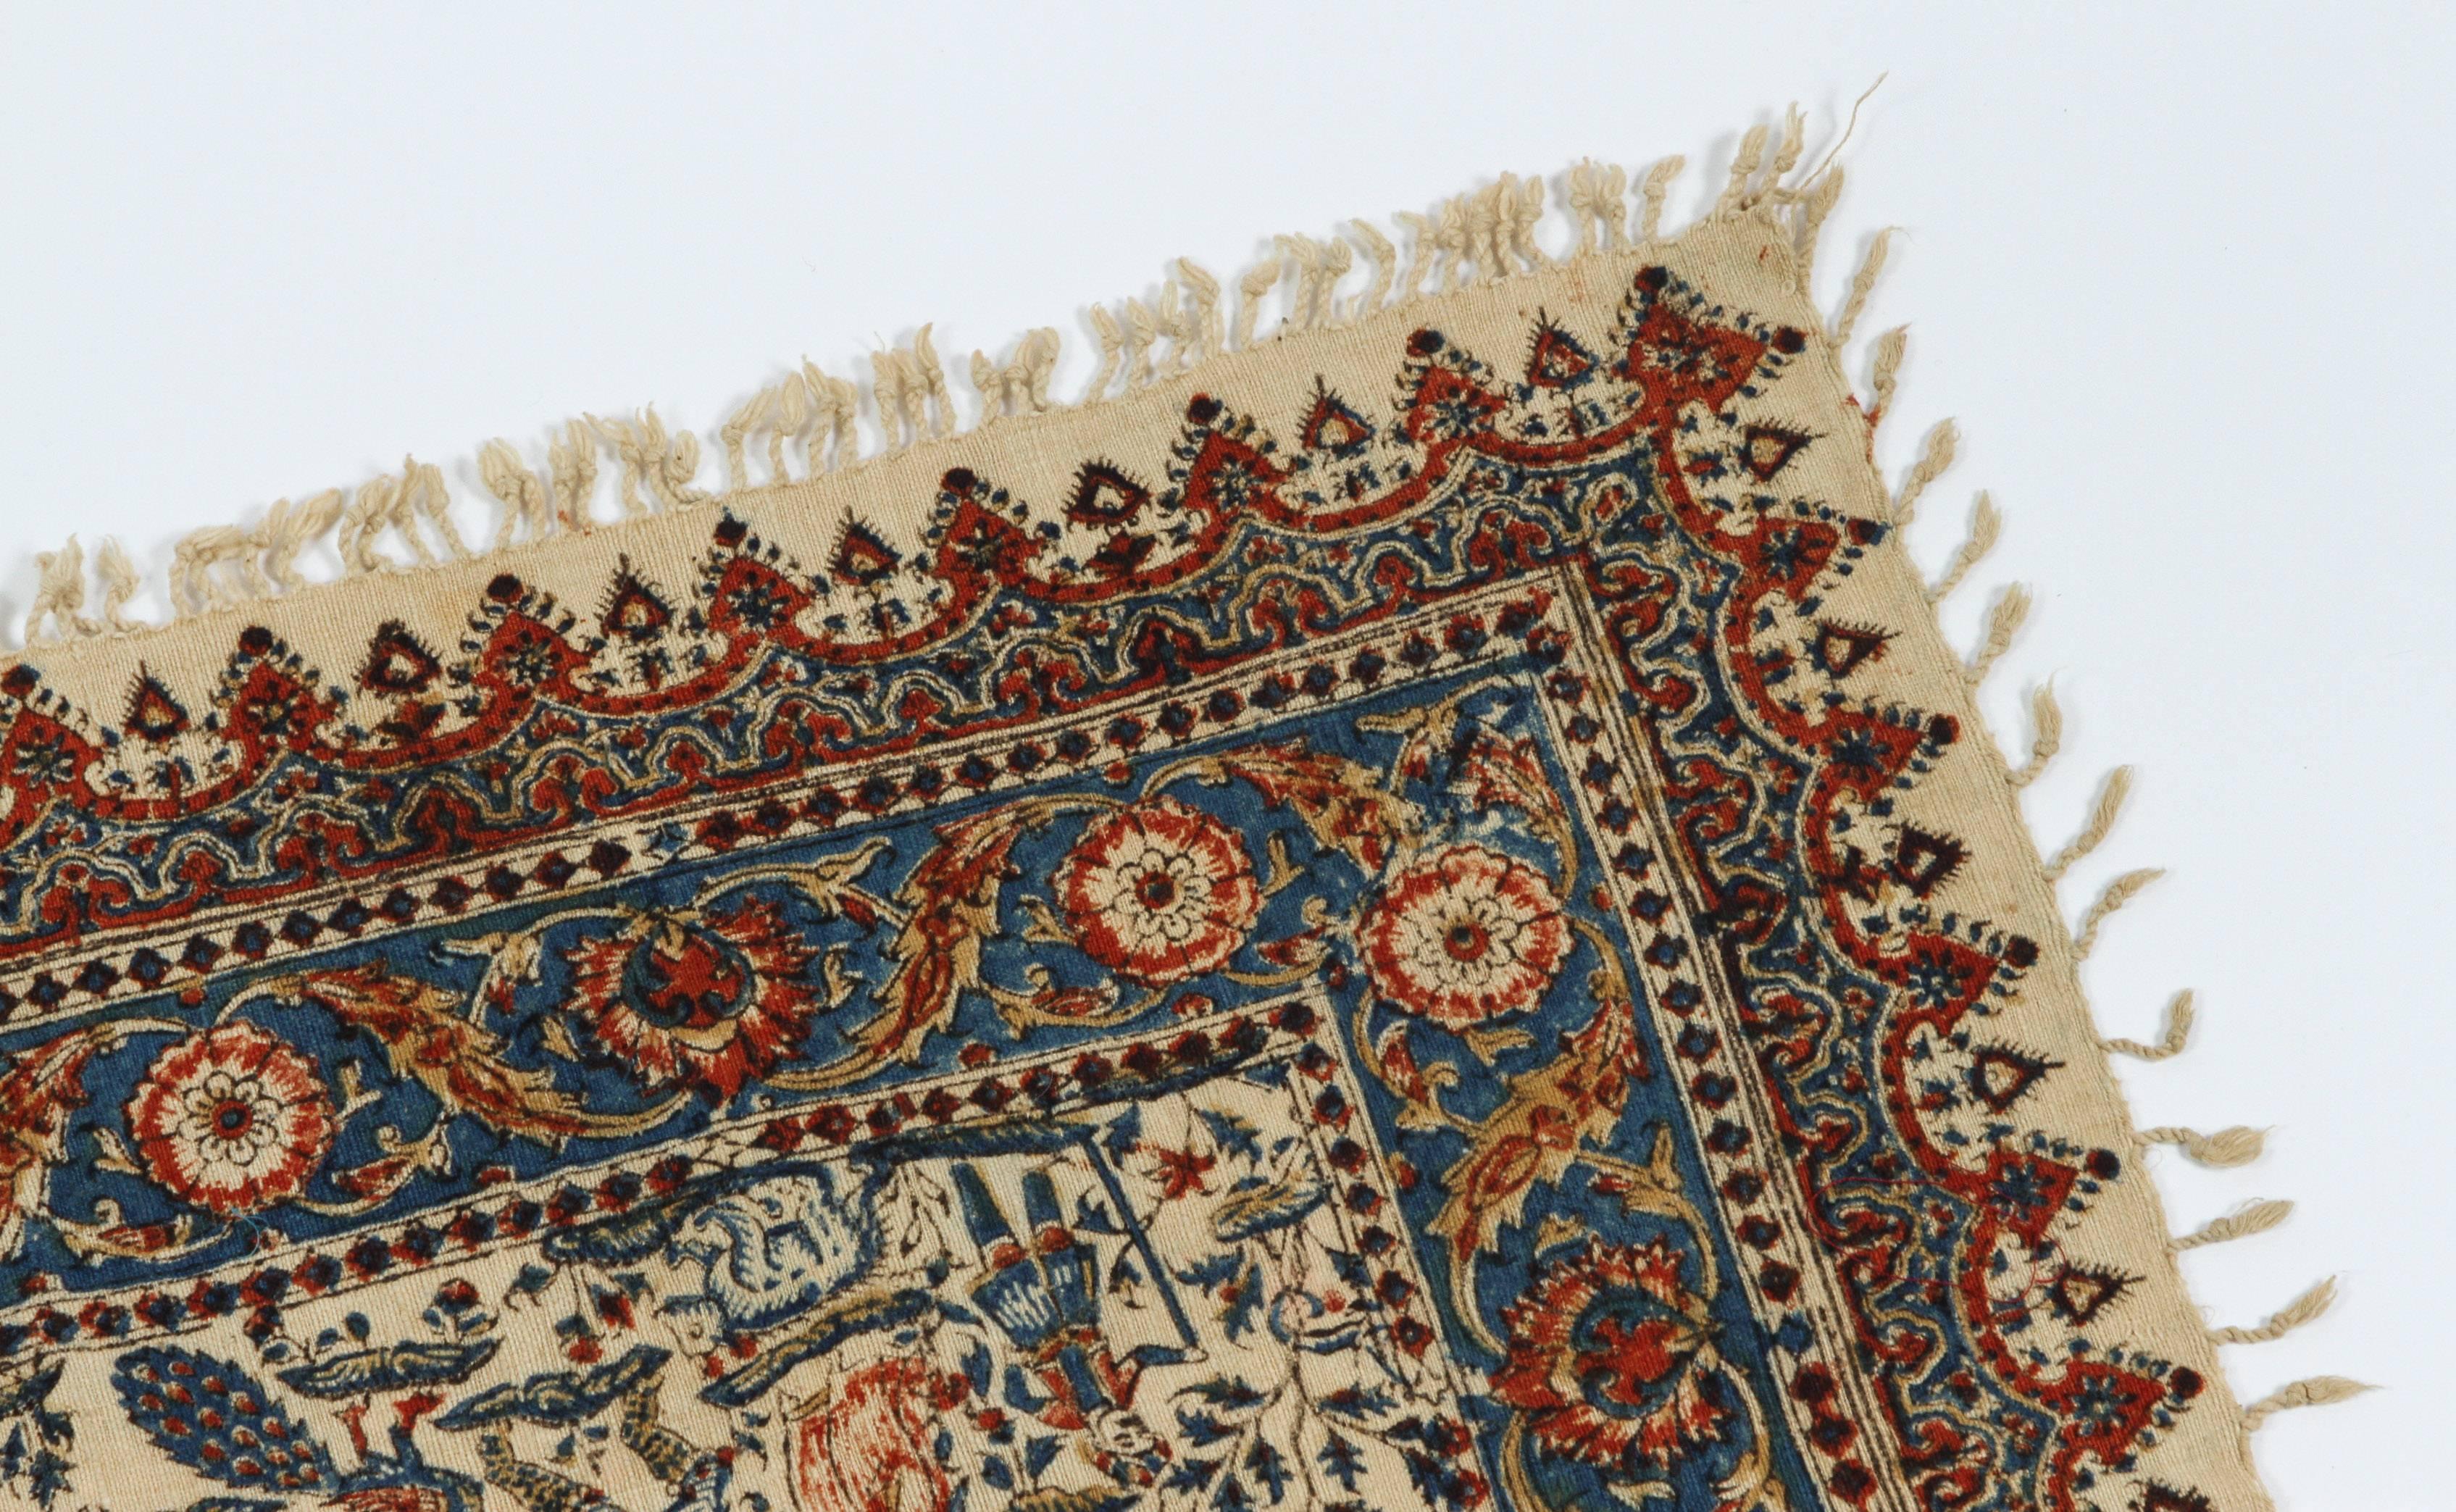 Indian Persian Paisley Kalamkari Textile